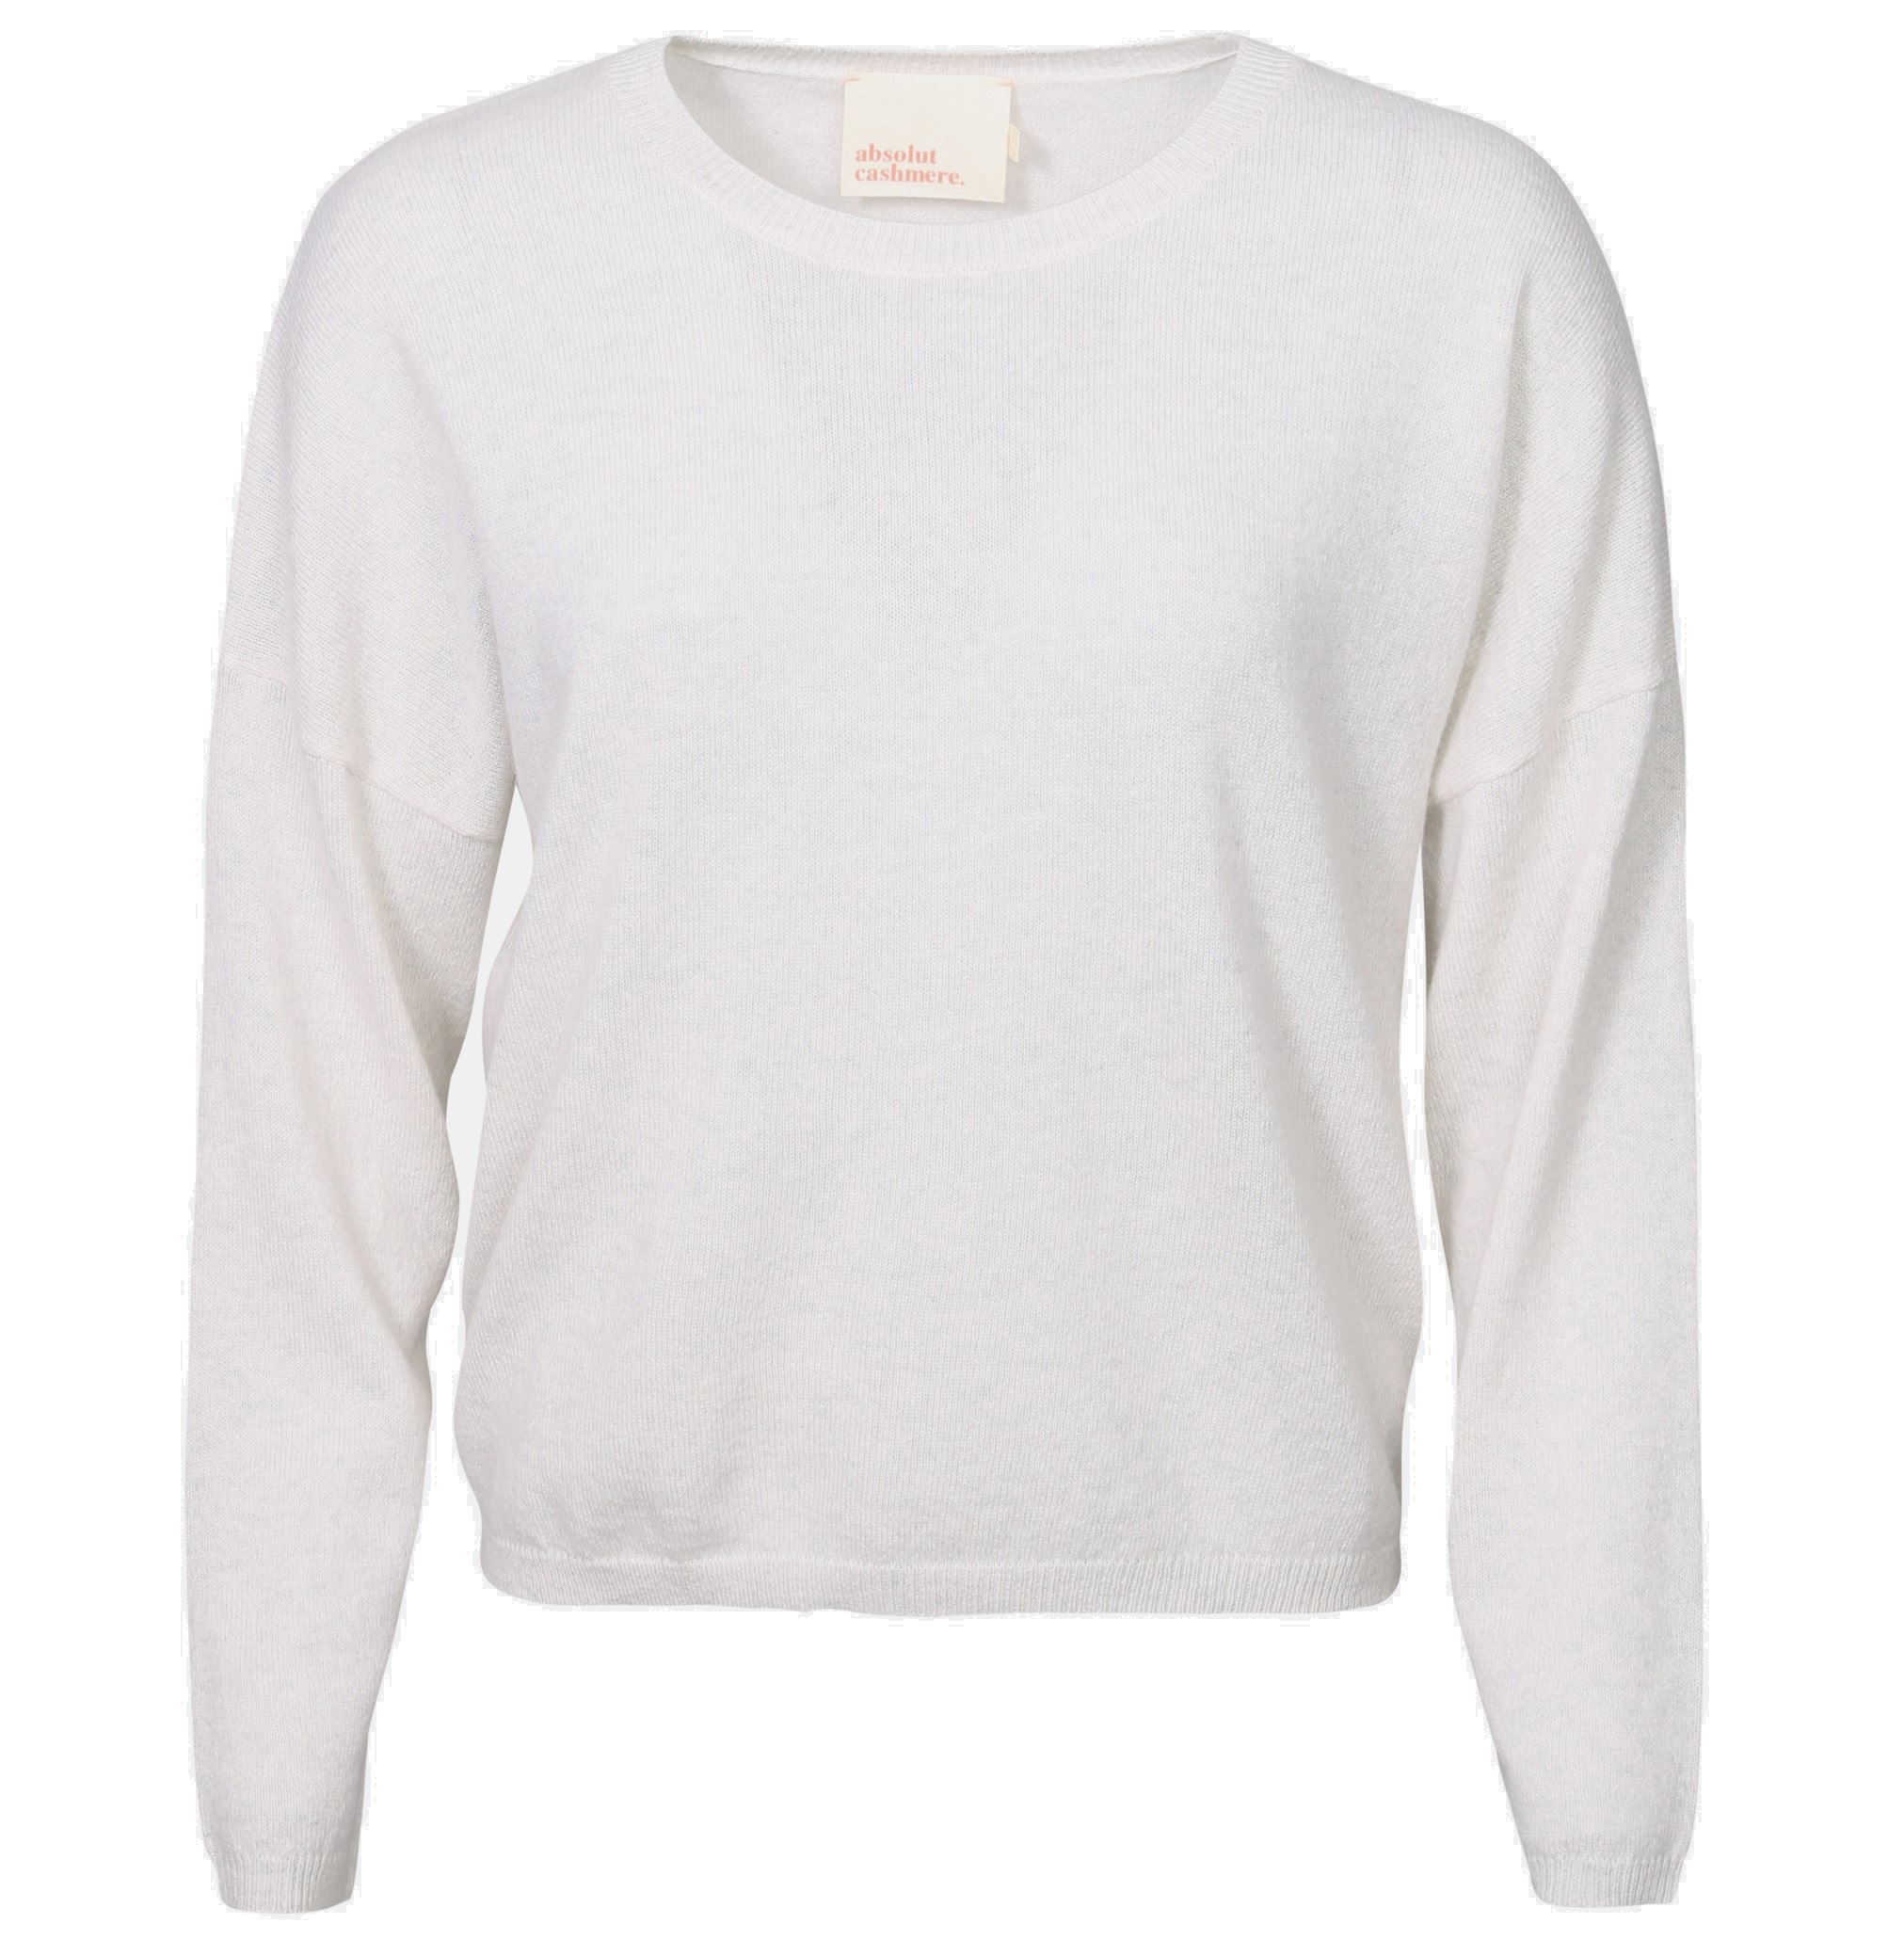 ABSOLUT CASHMERE Round Neck Sweater Kaira in Light Grey Melange L